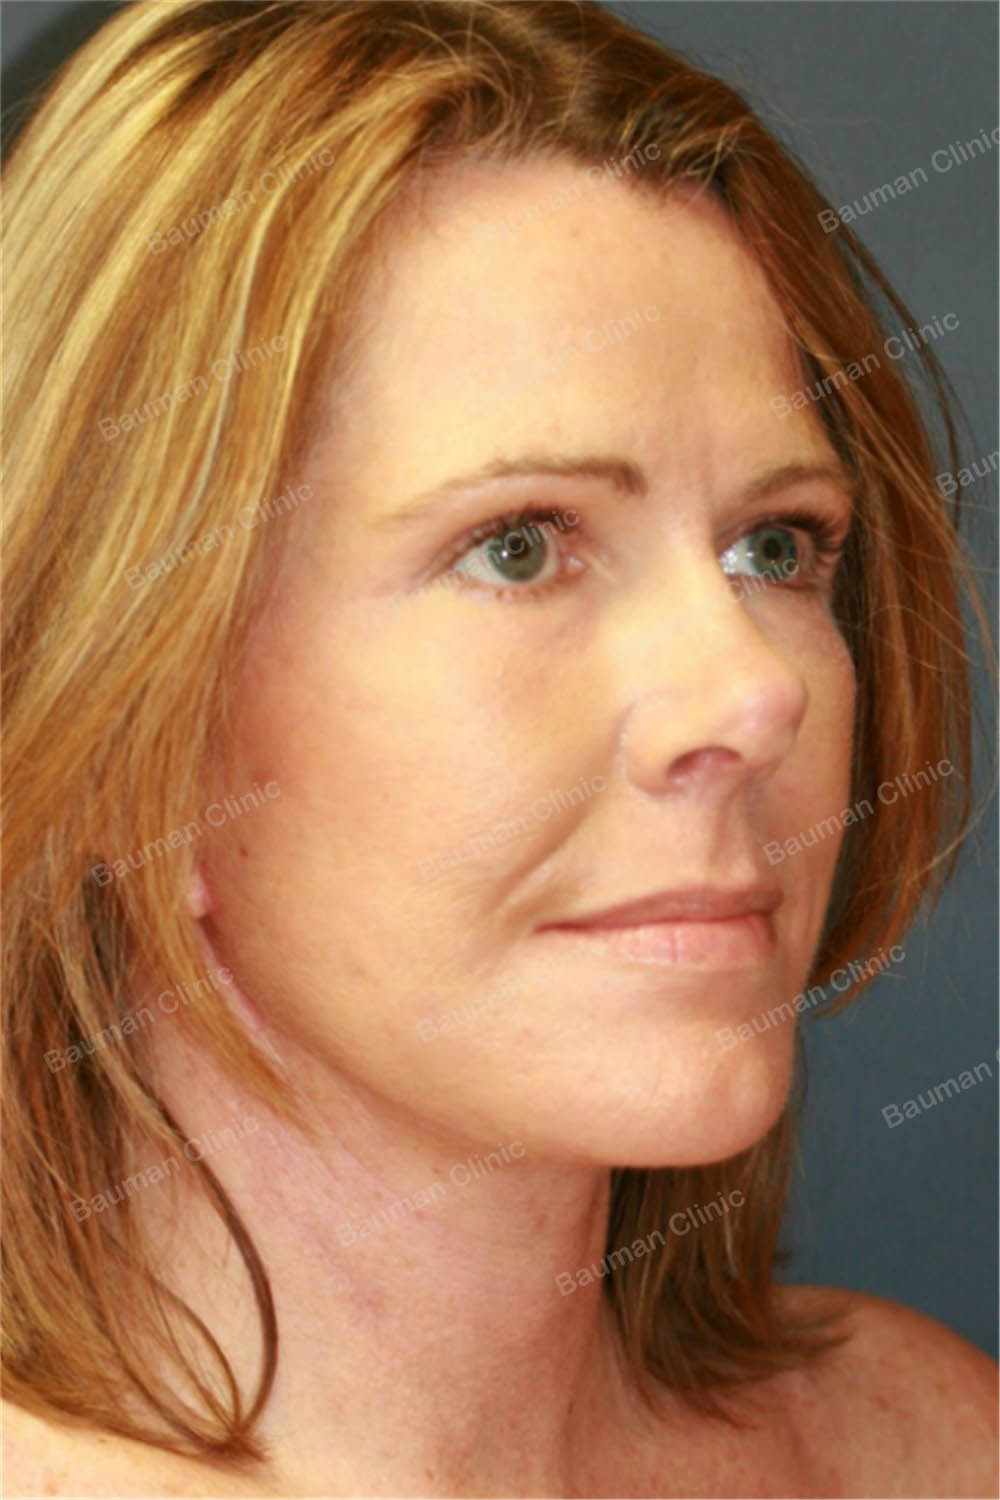 Căng da mặt, nữ 56 tuổi người Mỹ - case 5